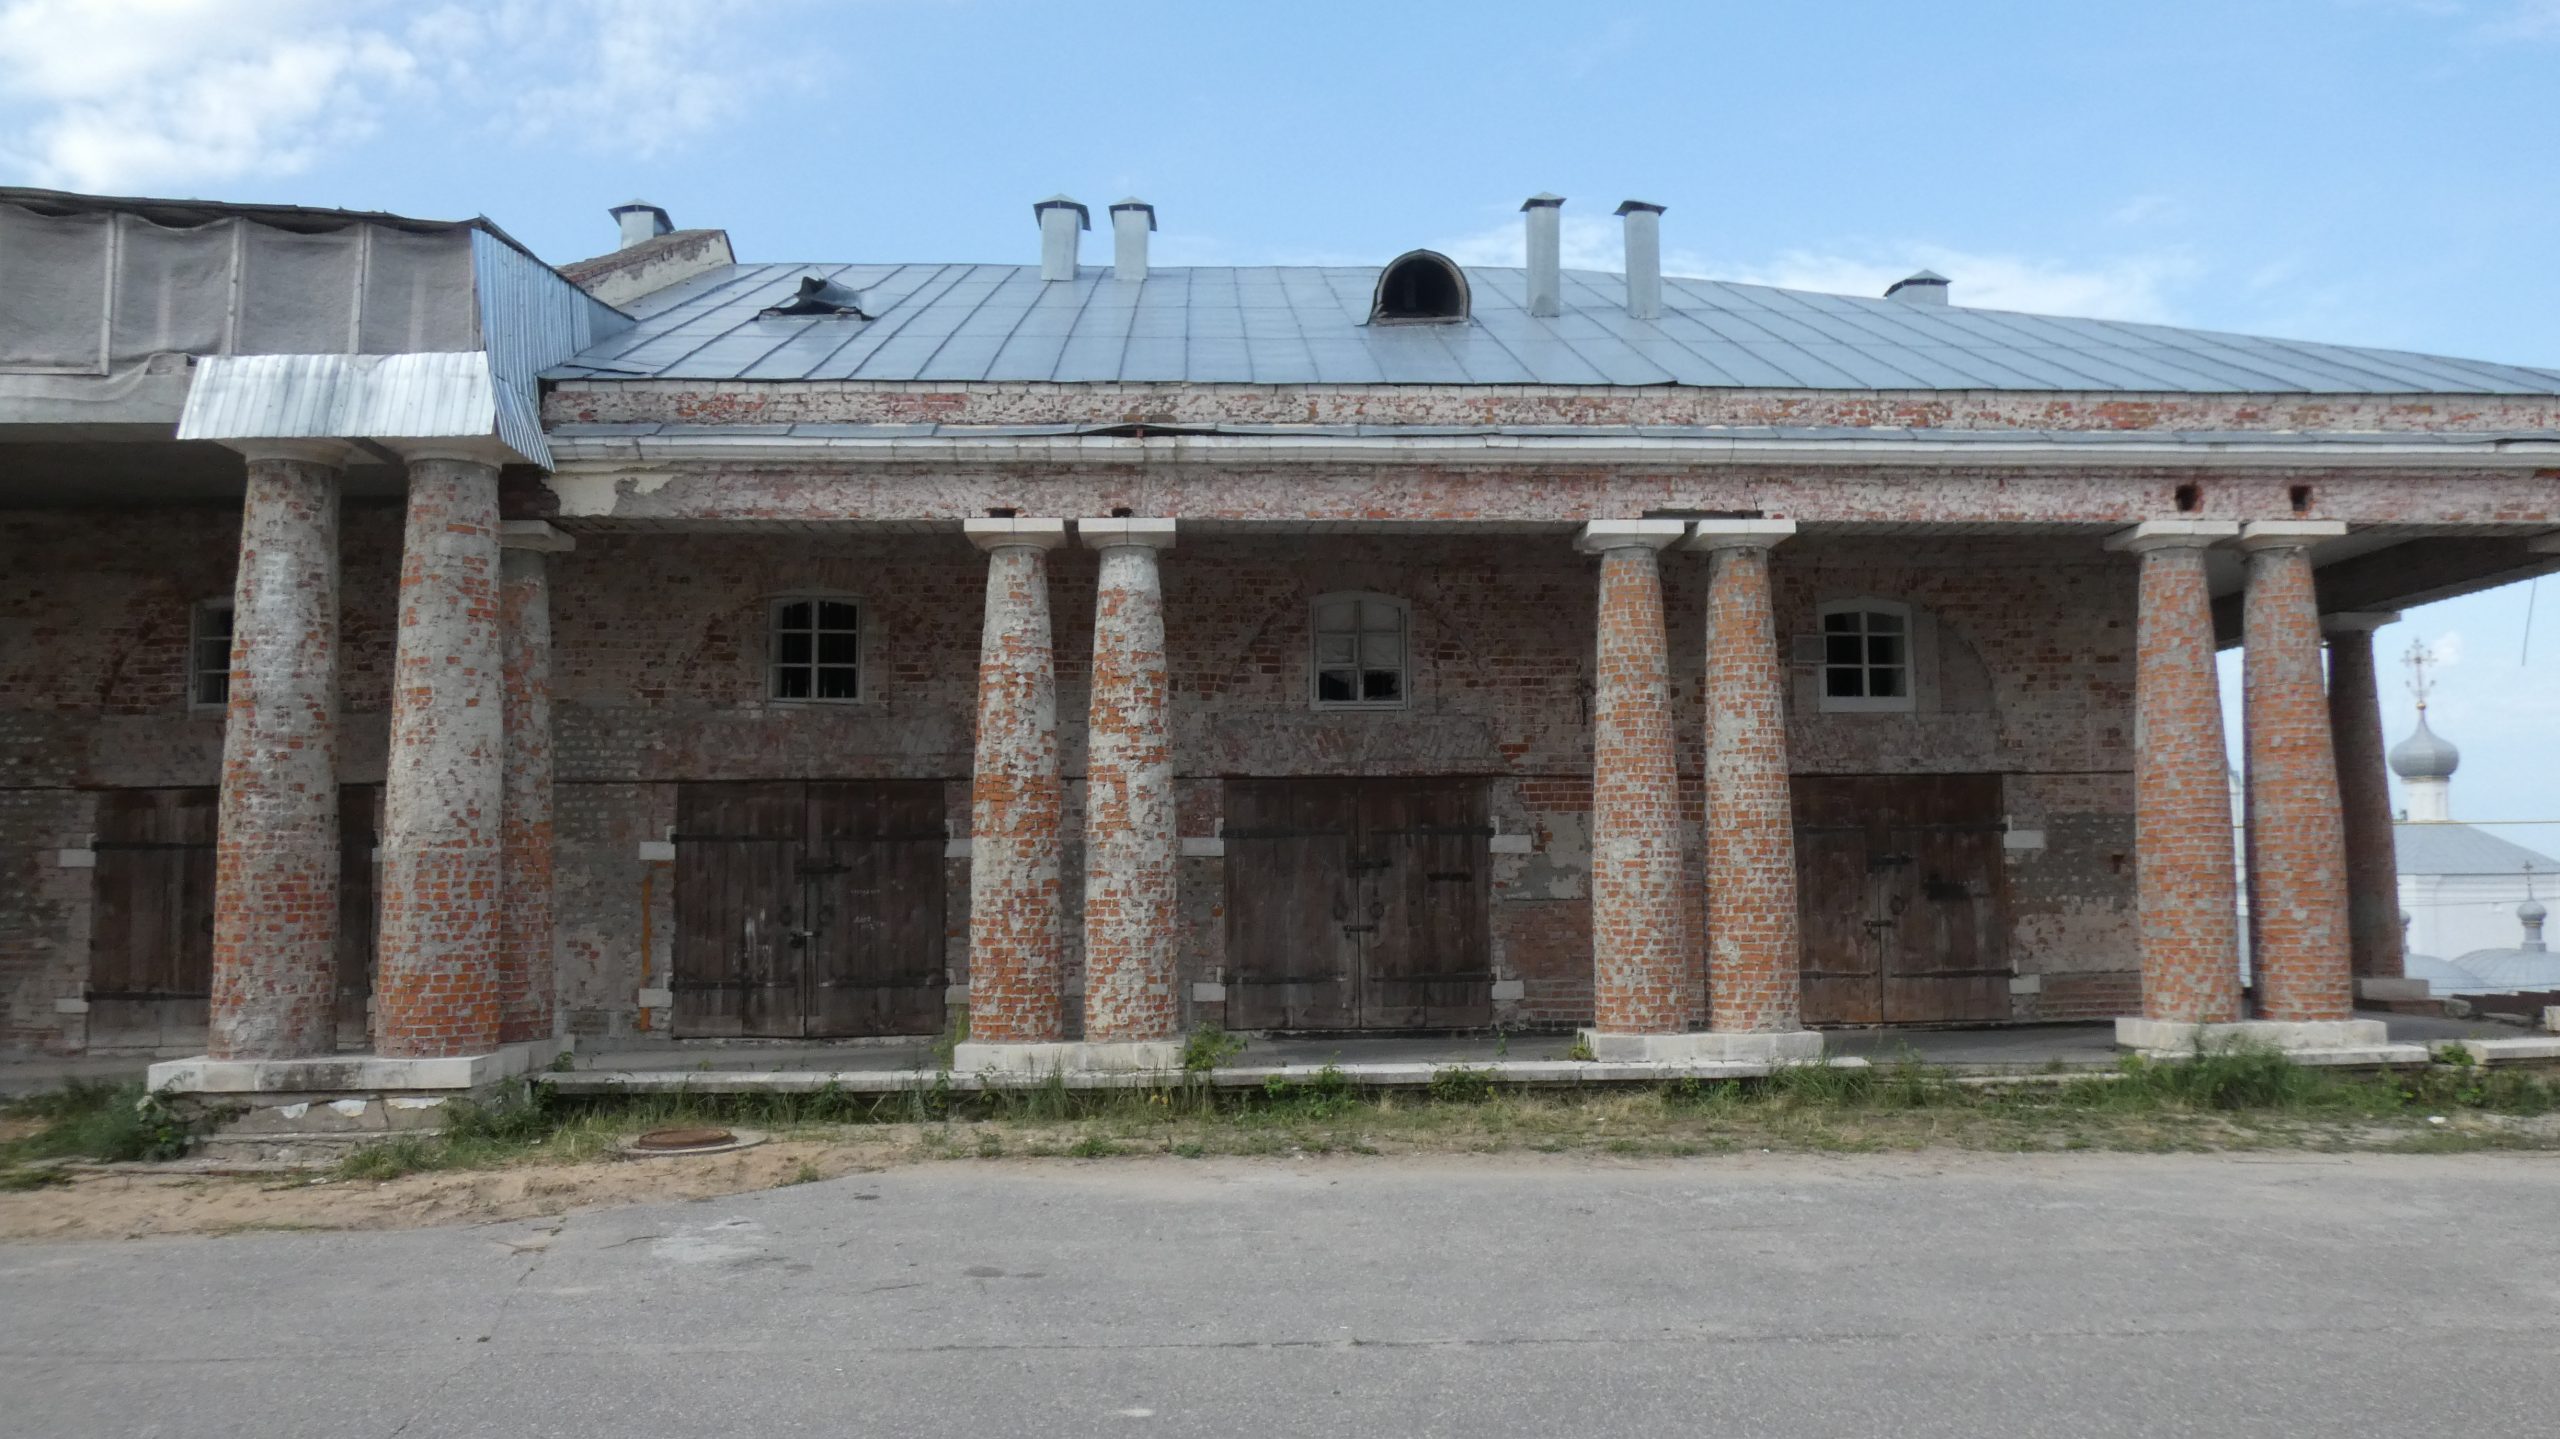 Гостиный двор Касимова. Строили или восстанавливали?